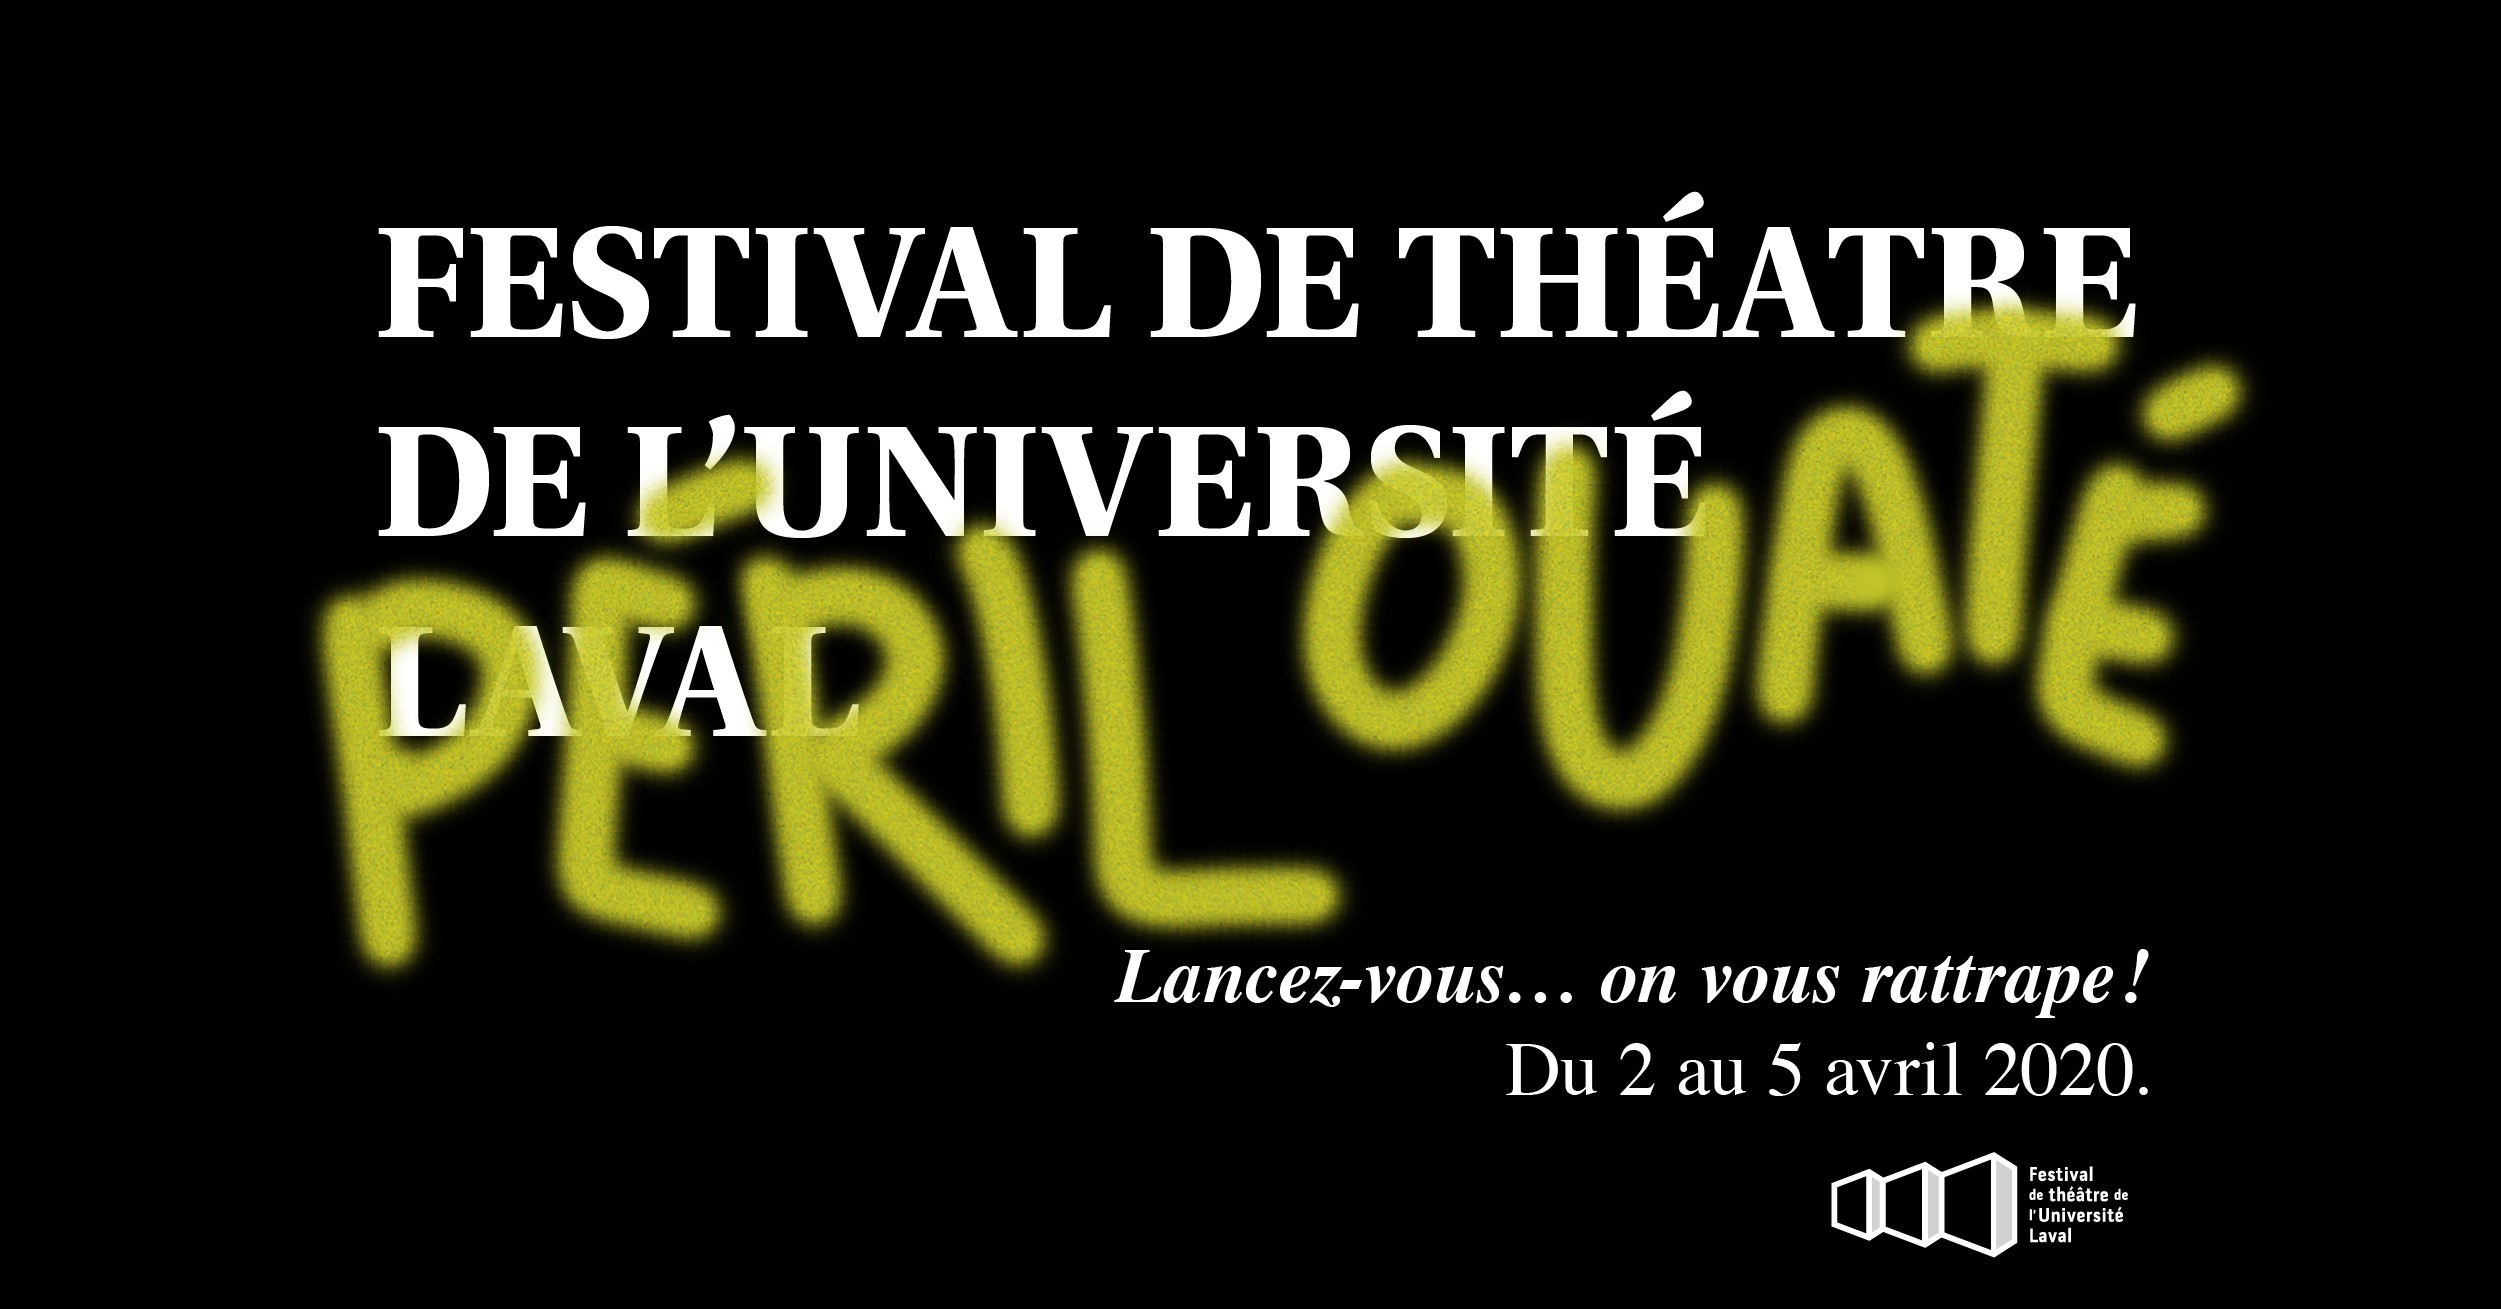 Festival de Théâtre de l’Université Laval